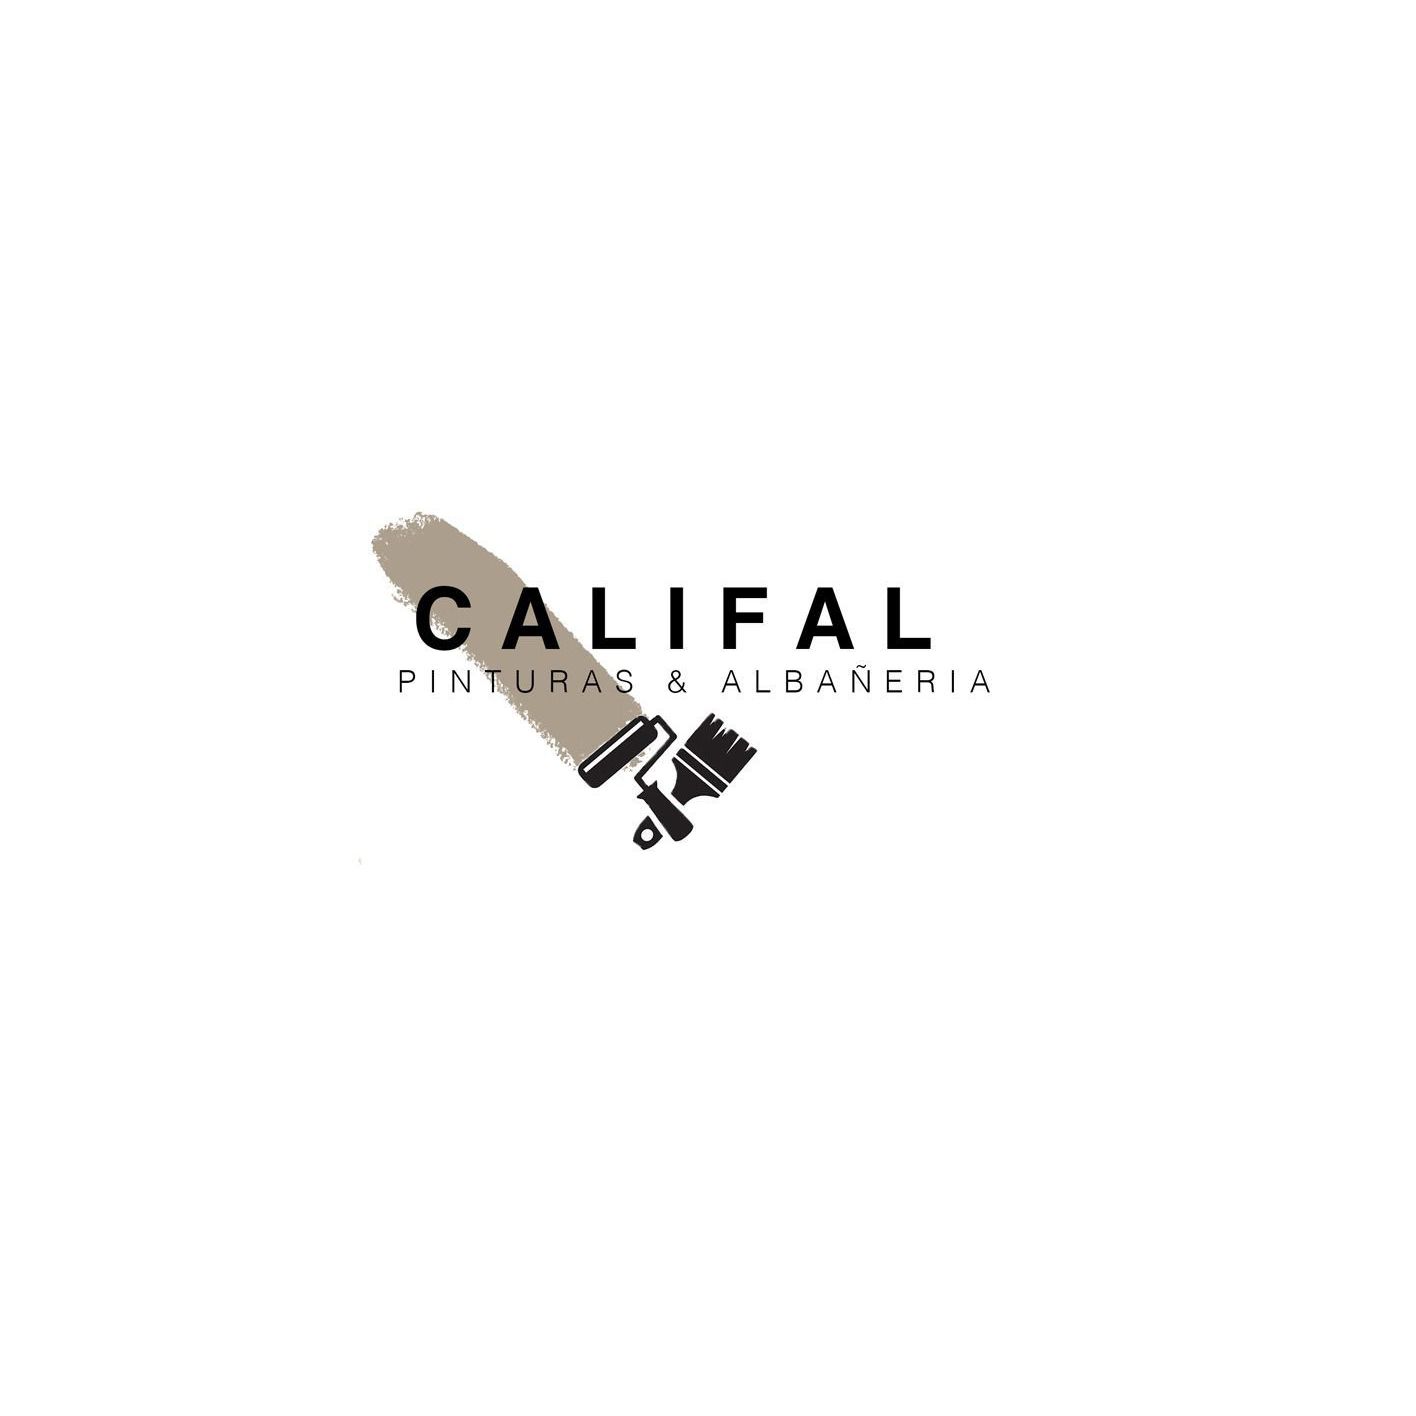 Califal Pinturas & Albañileria en el Vallès Logo